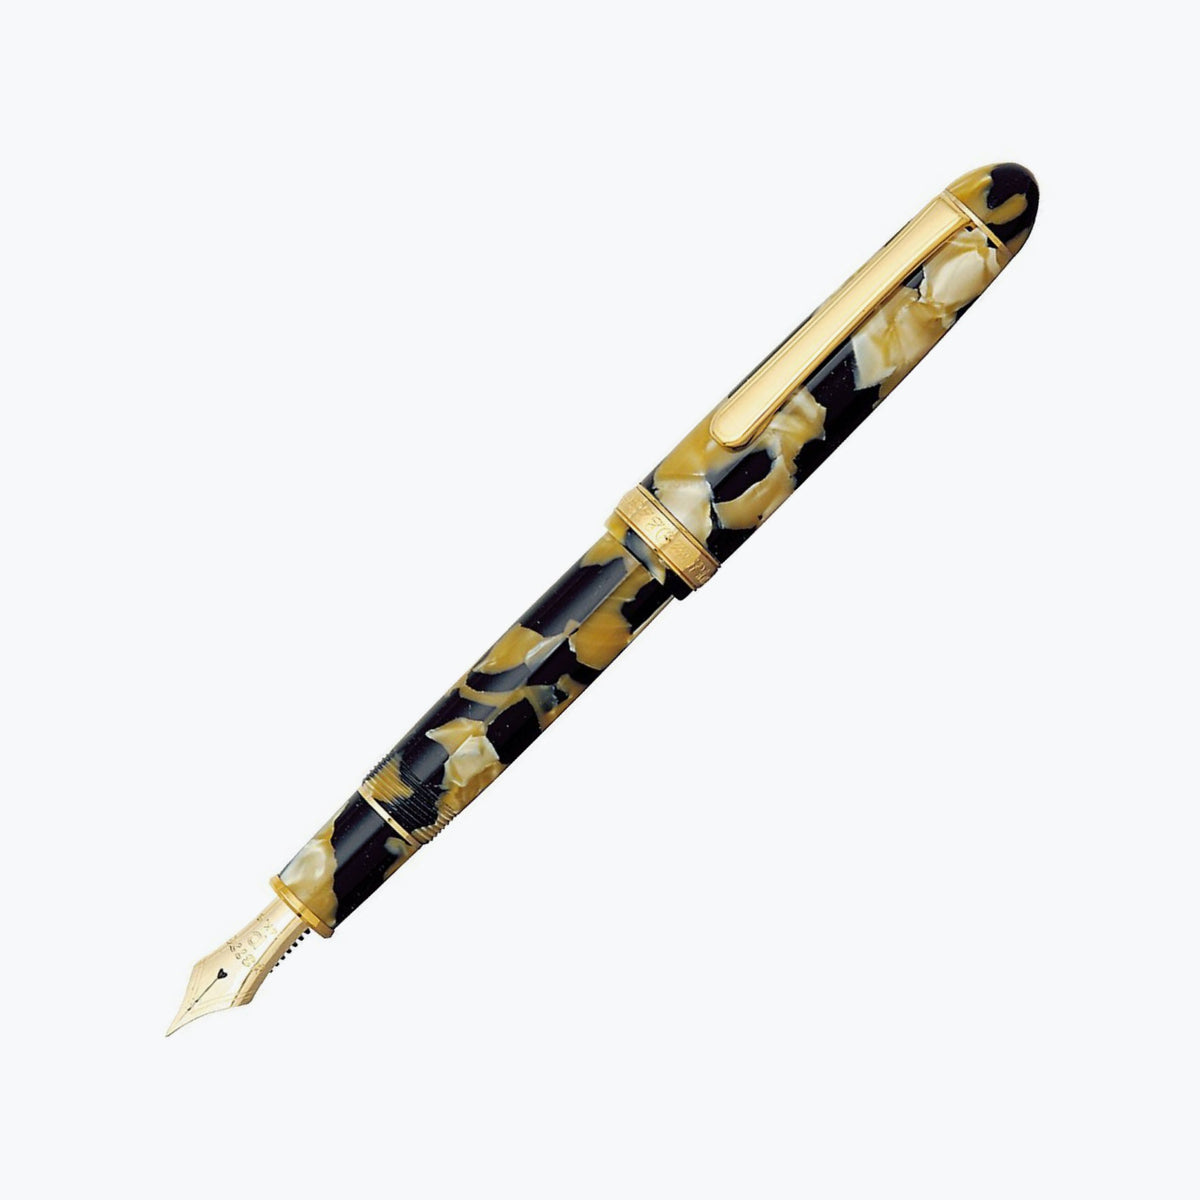 Platinum - Fountain Pen - #3776 Century - Celluloid - Calico